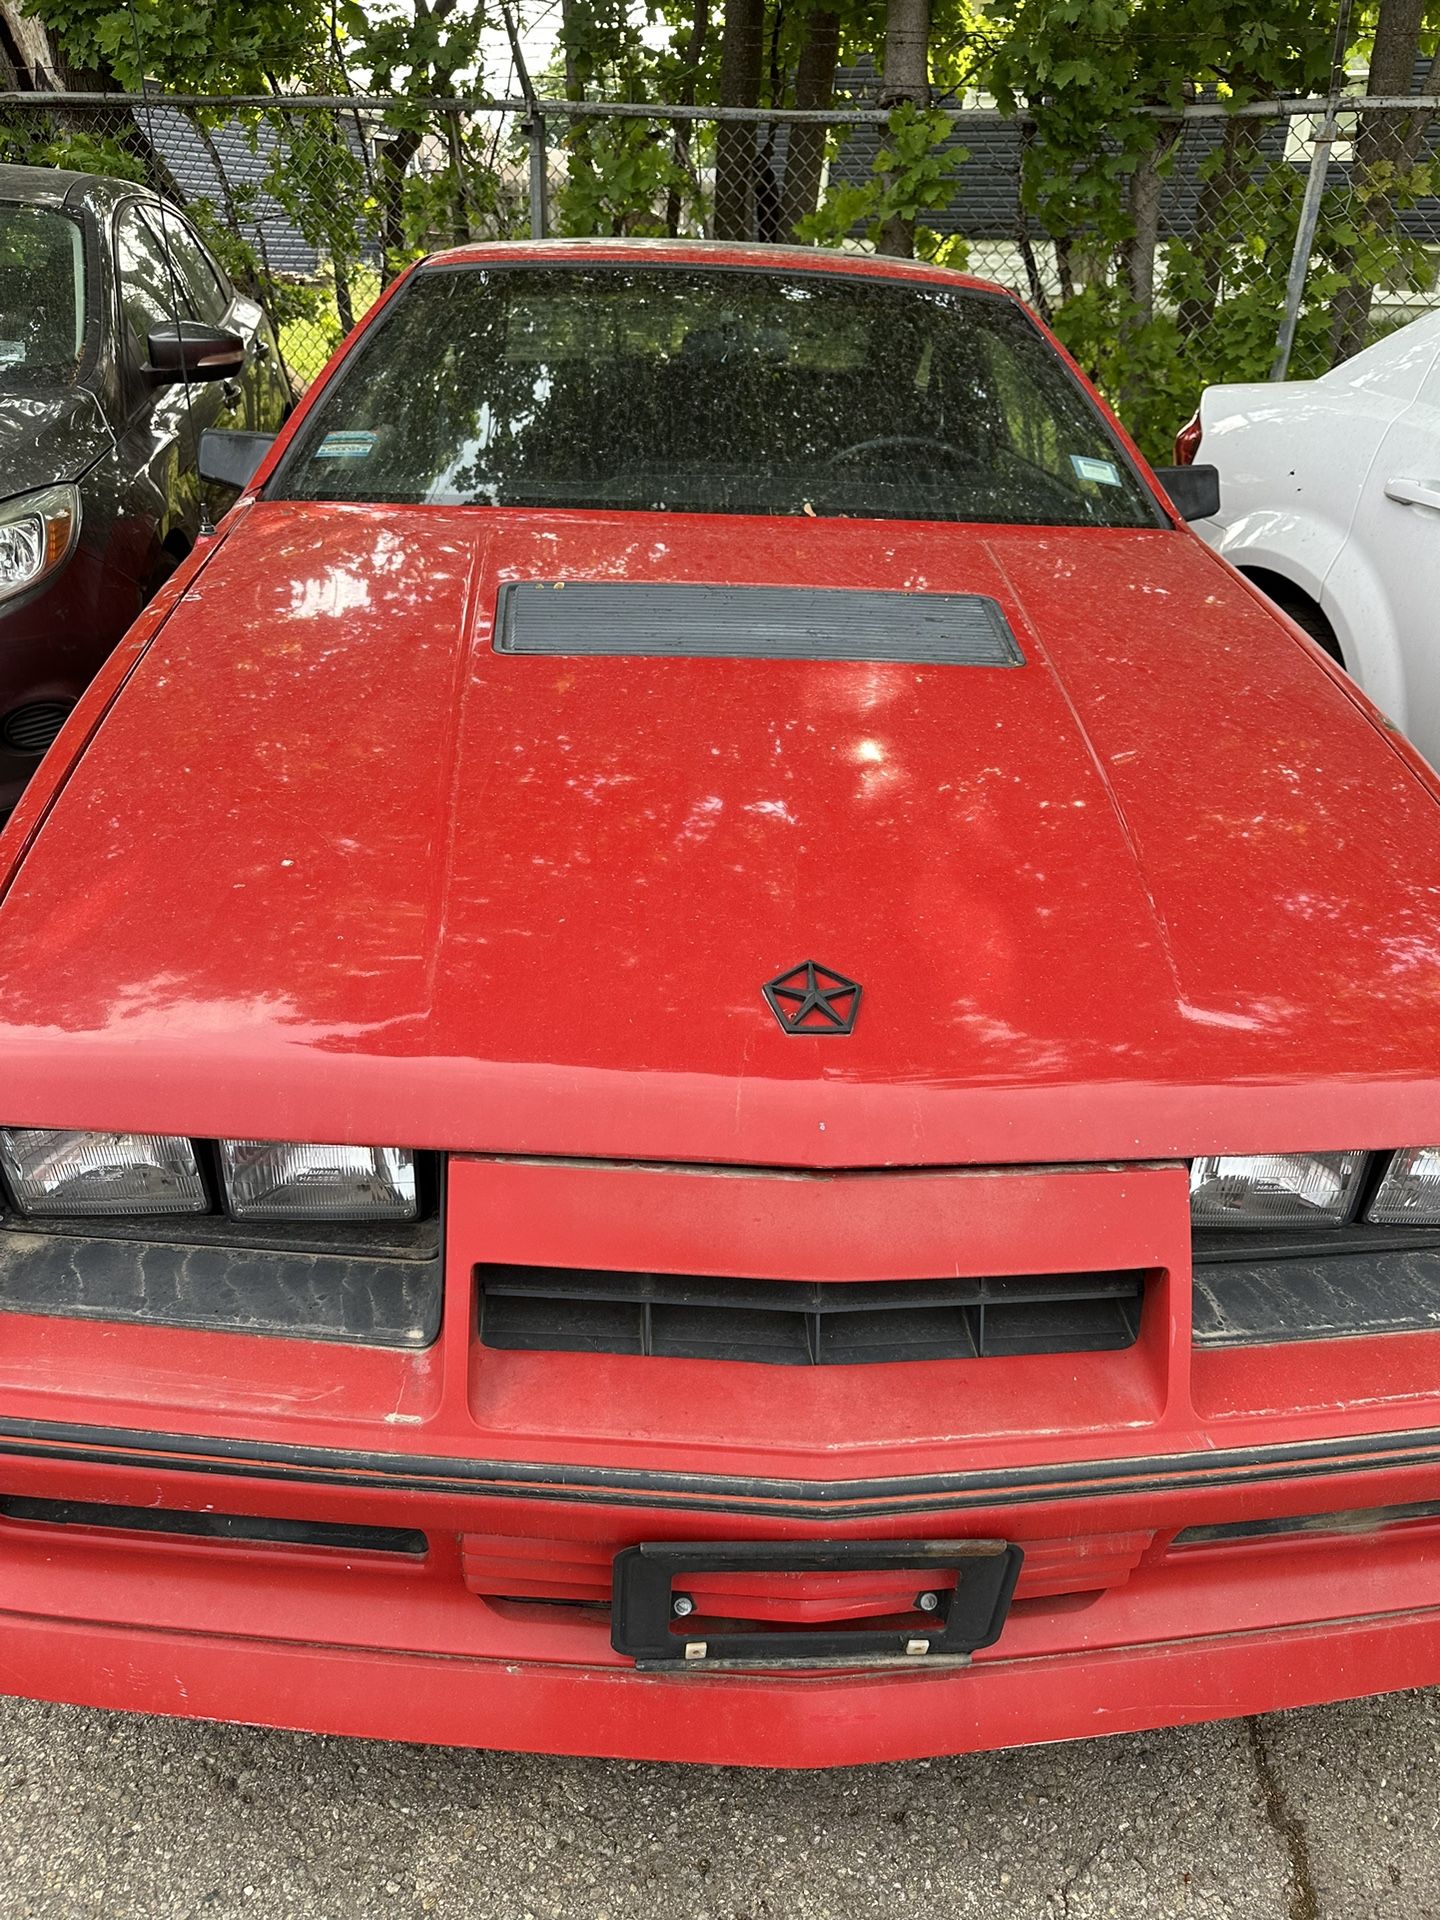 1984 Dodge Daytona